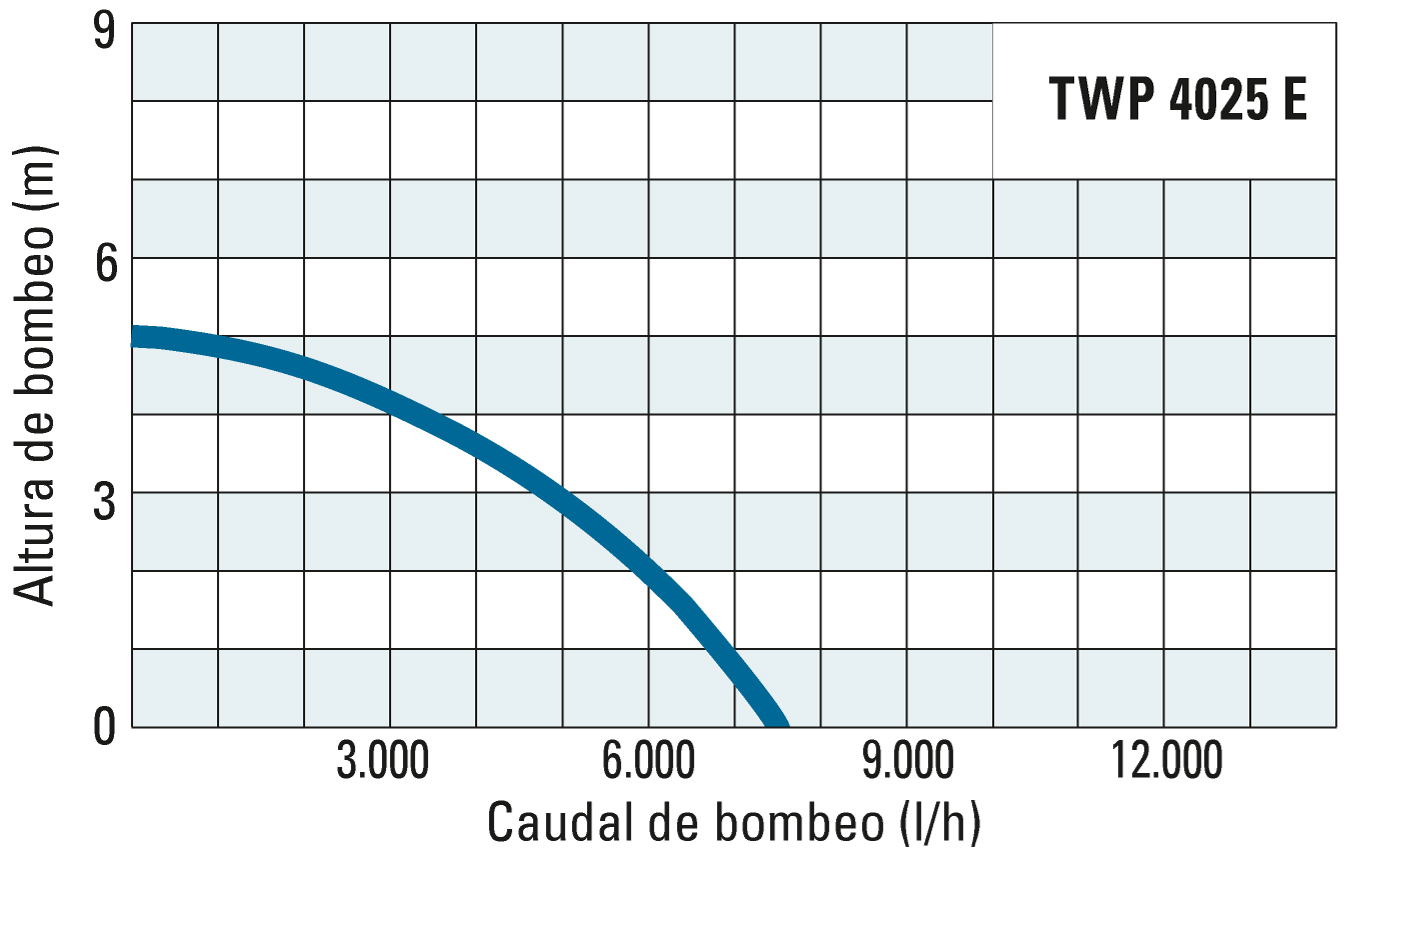 Altura de bombeo y caudal de bombeo de la TWP 4025 E